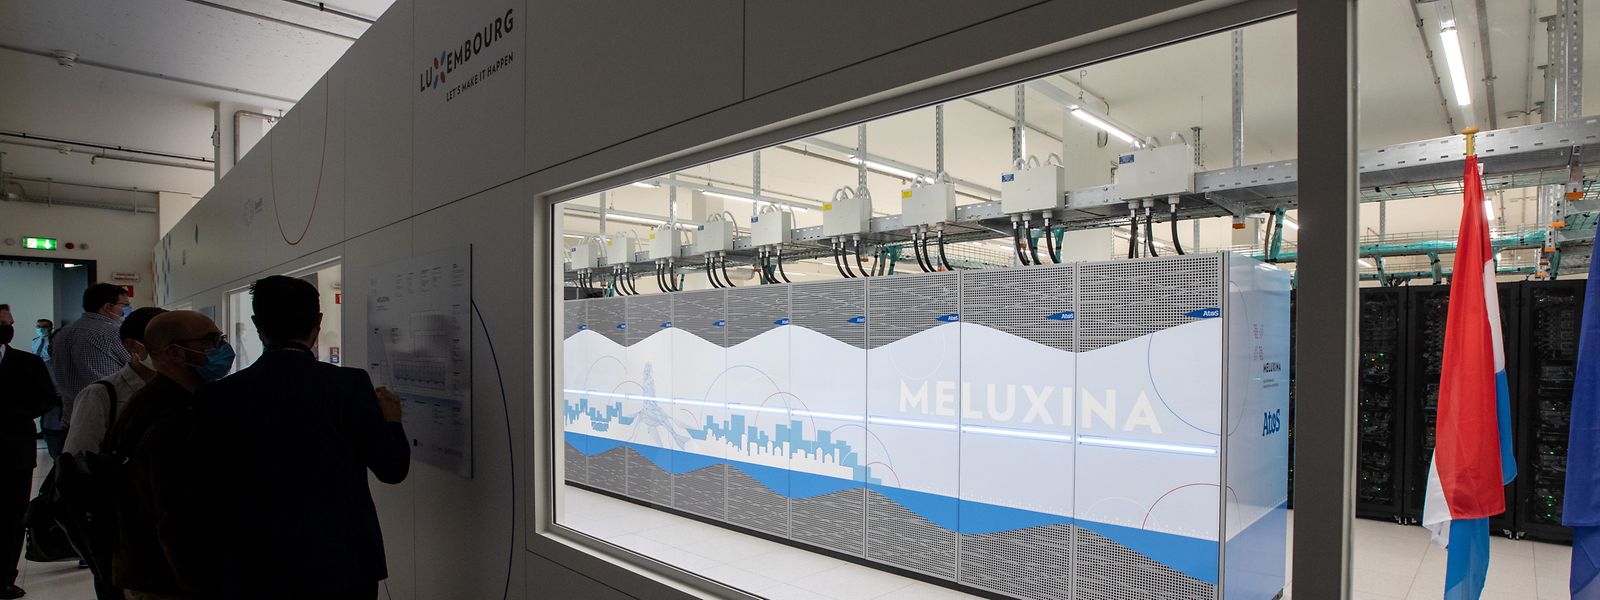 MeluXina est alimenté à 100% par de l’énergie verte et se trouve en termes d’efficacité énergétique parmi les 15 meilleurs systèmes dans le top 500 des supercalculateurs les plus puissants.